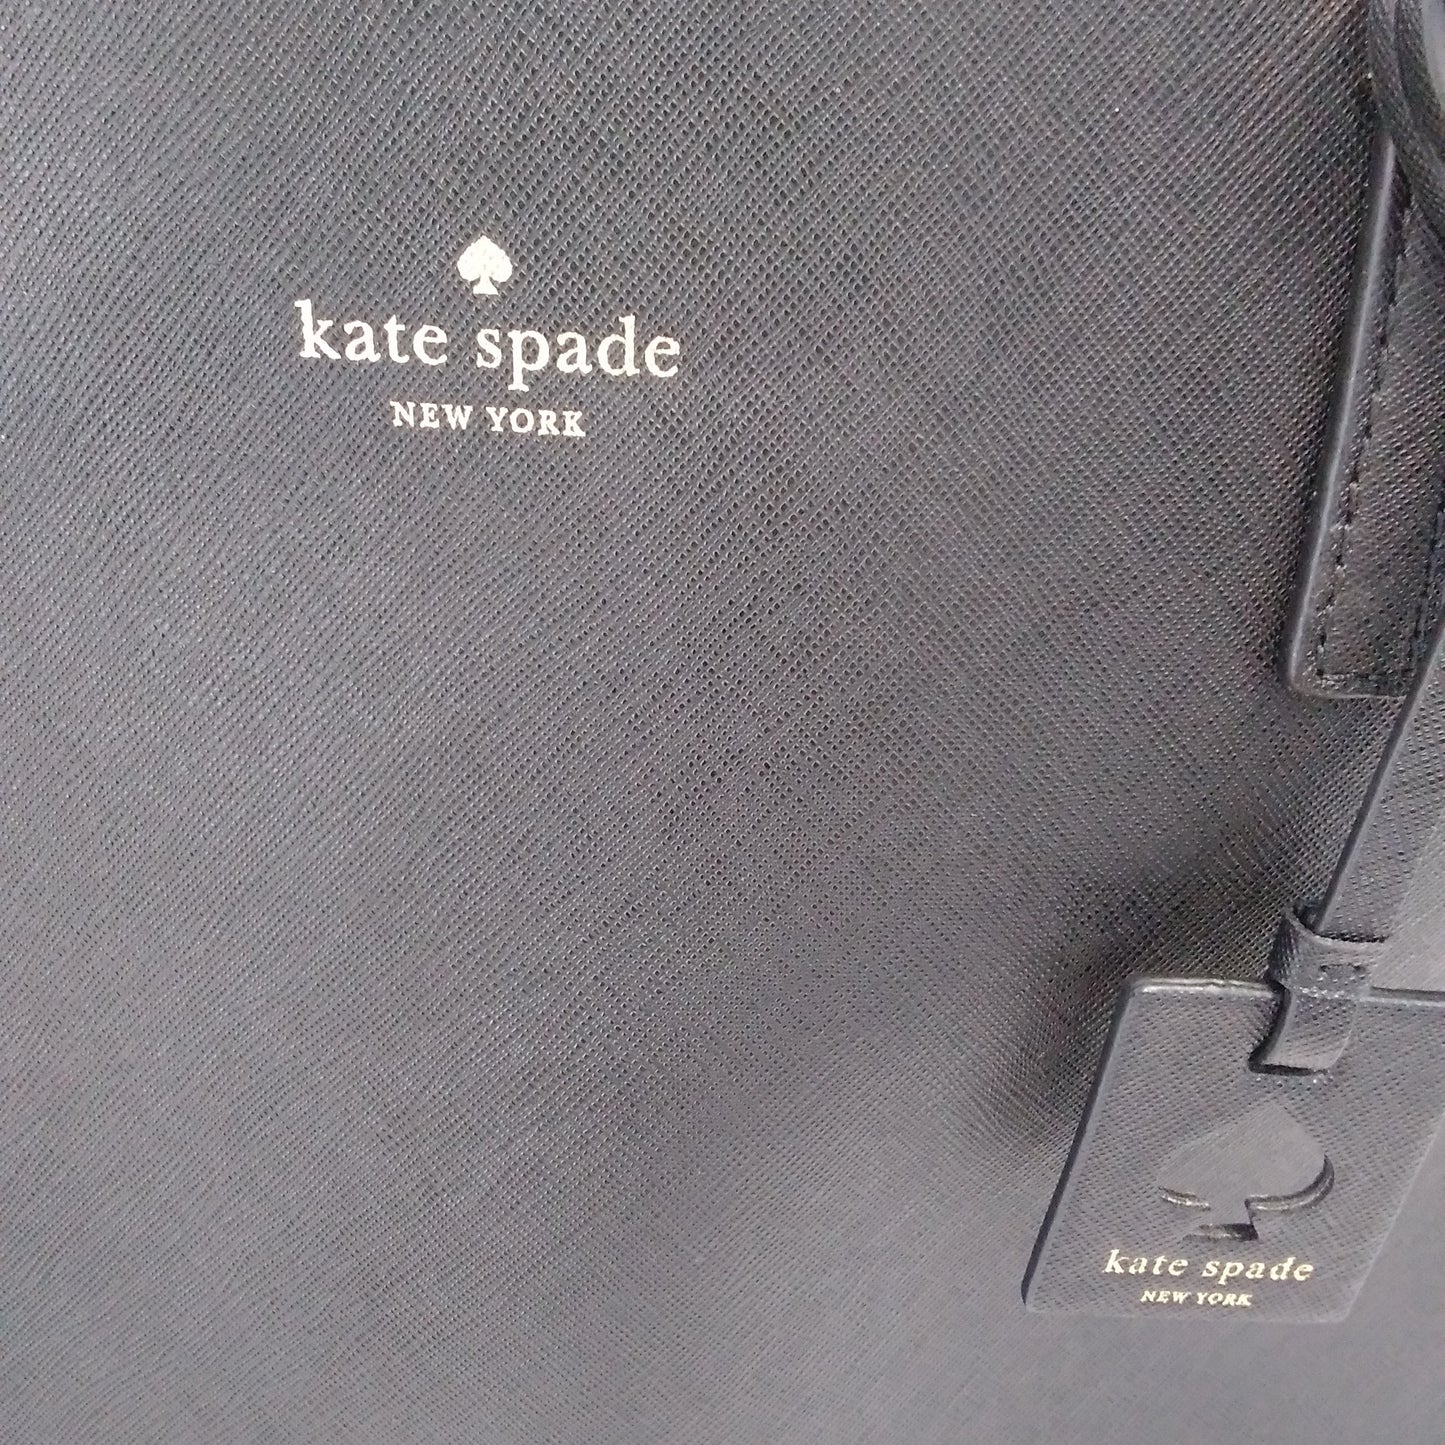 NWOT - Kate Spade Scotts Place Lida Tote Bag - Color: Black